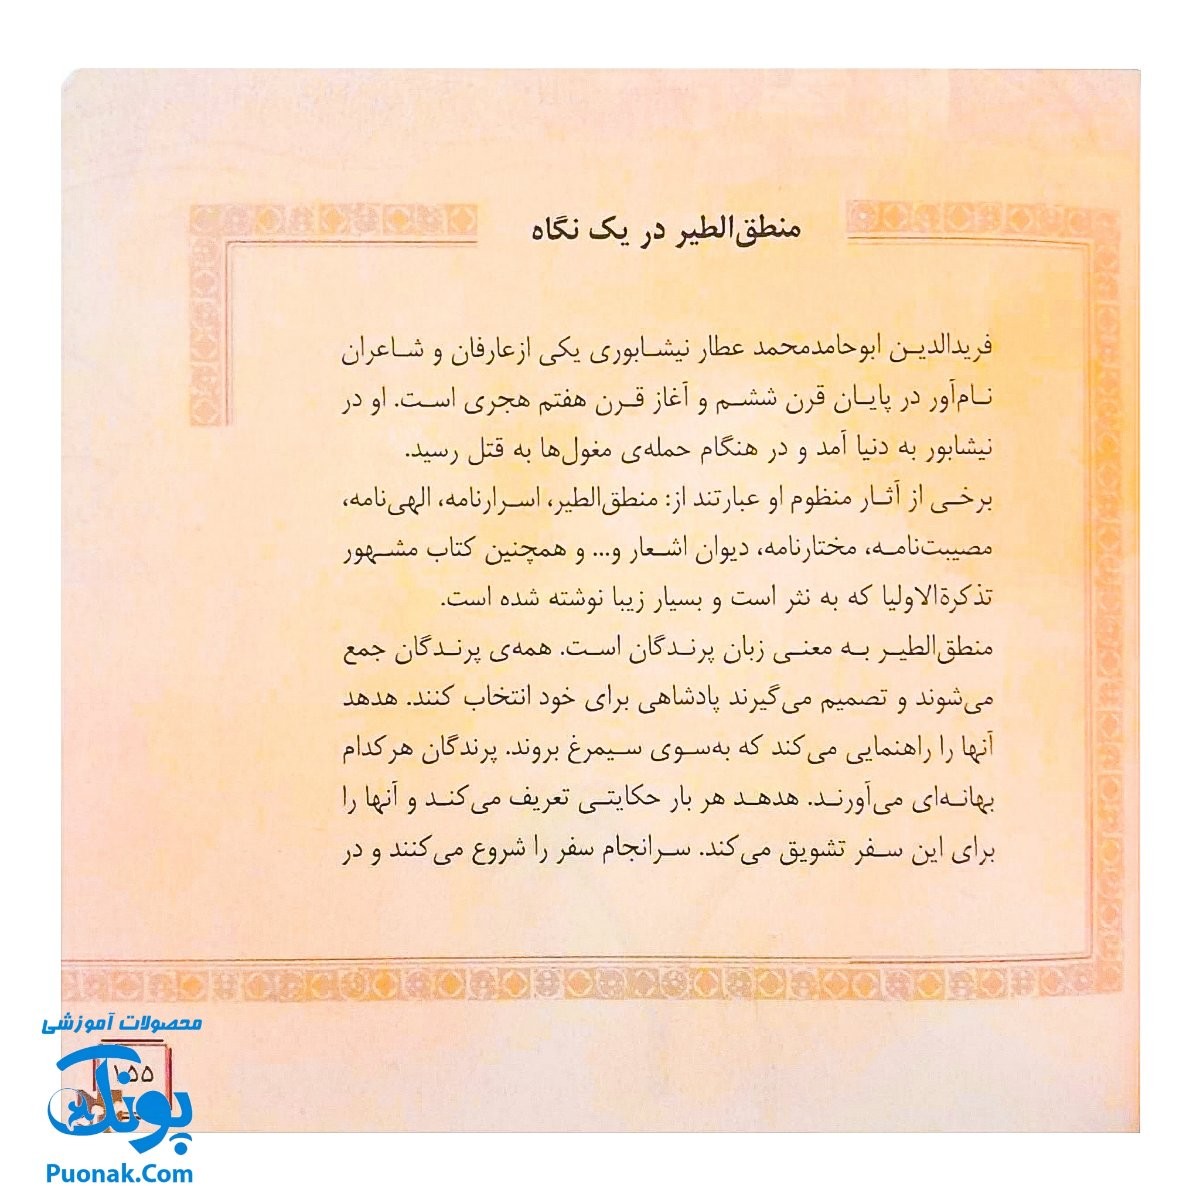 کتاب مجموعه قصه های قشنگ قدیمی جلد ۱۲ دوازدهم ۱۲ قصه از منطق الطیر عطار نیشابوری